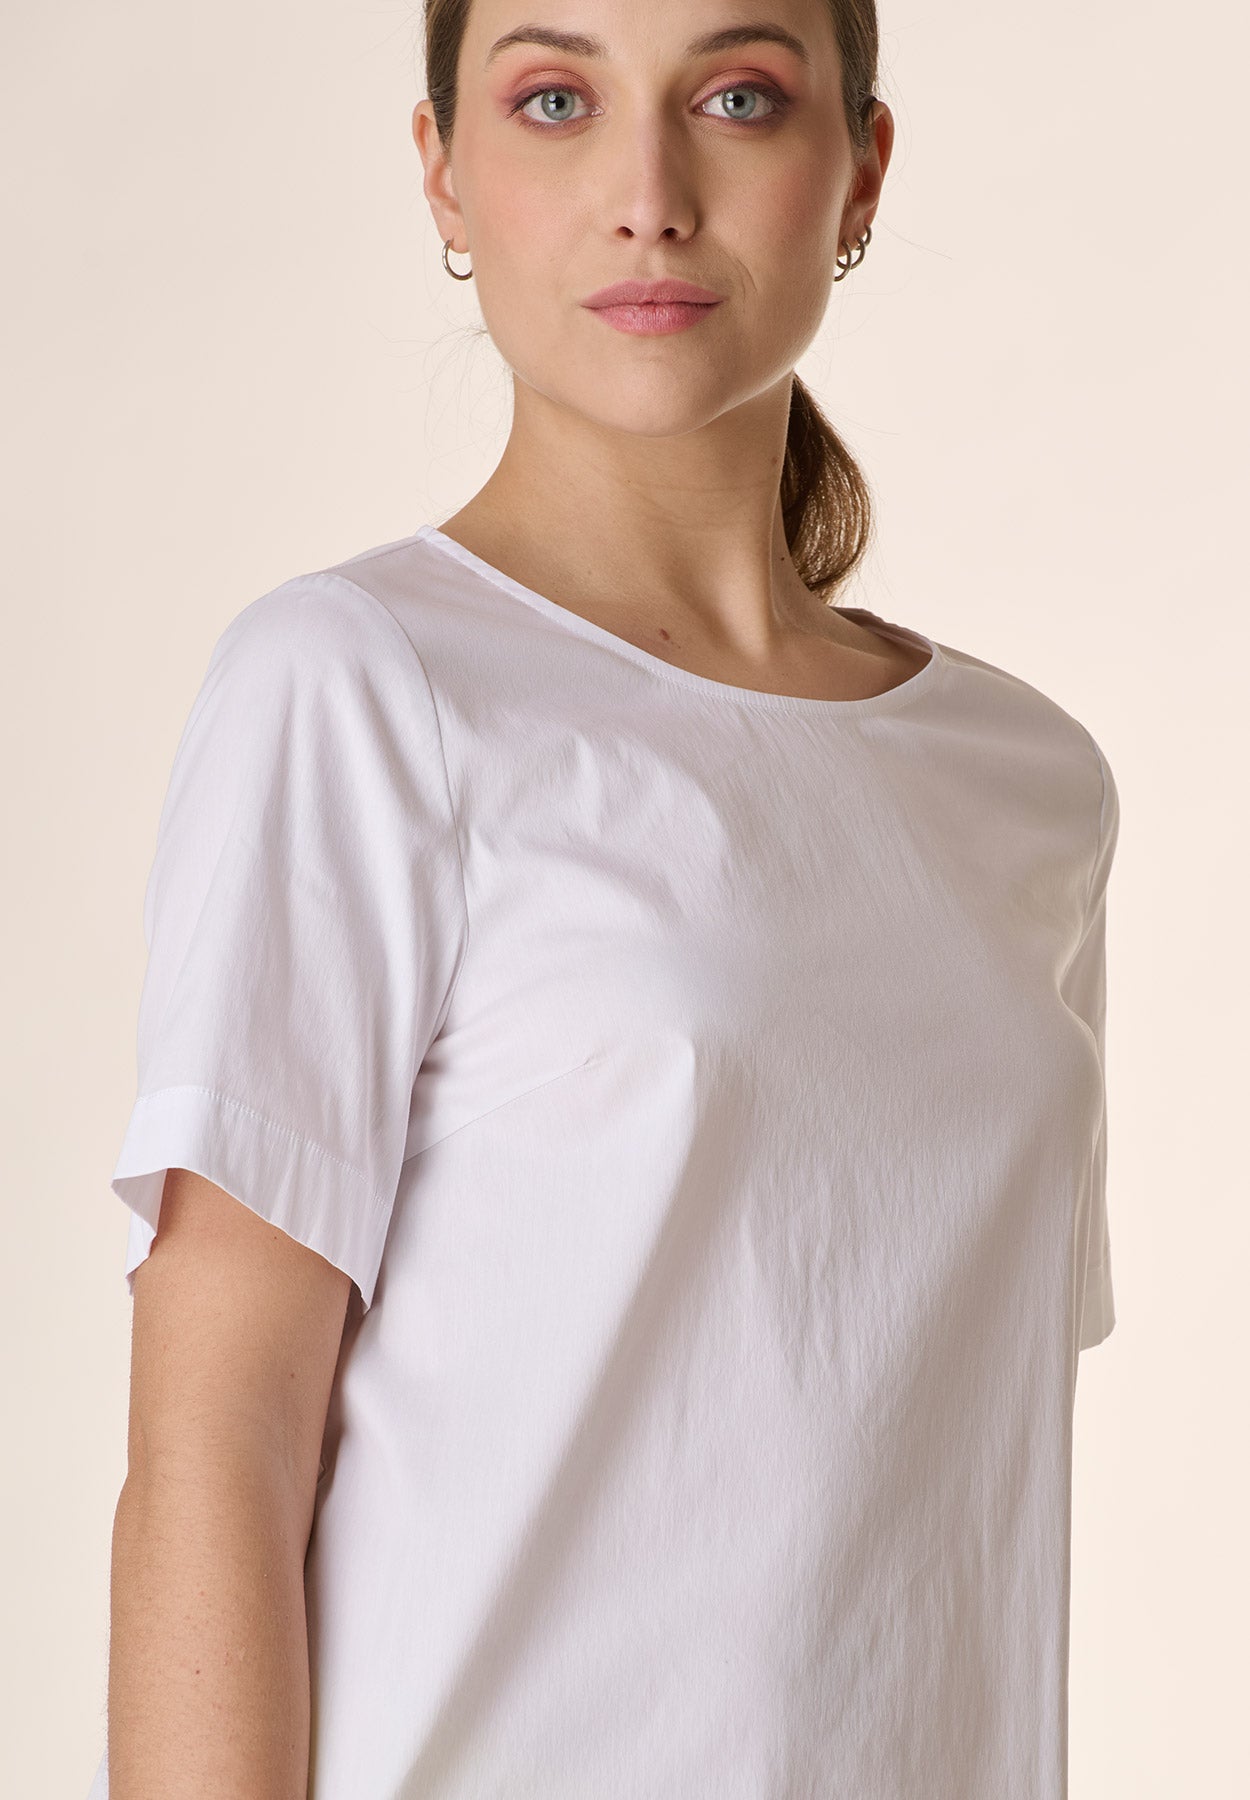 Weiße Bluse mit Rundhalsausschnitt und abgerundetem Rücken